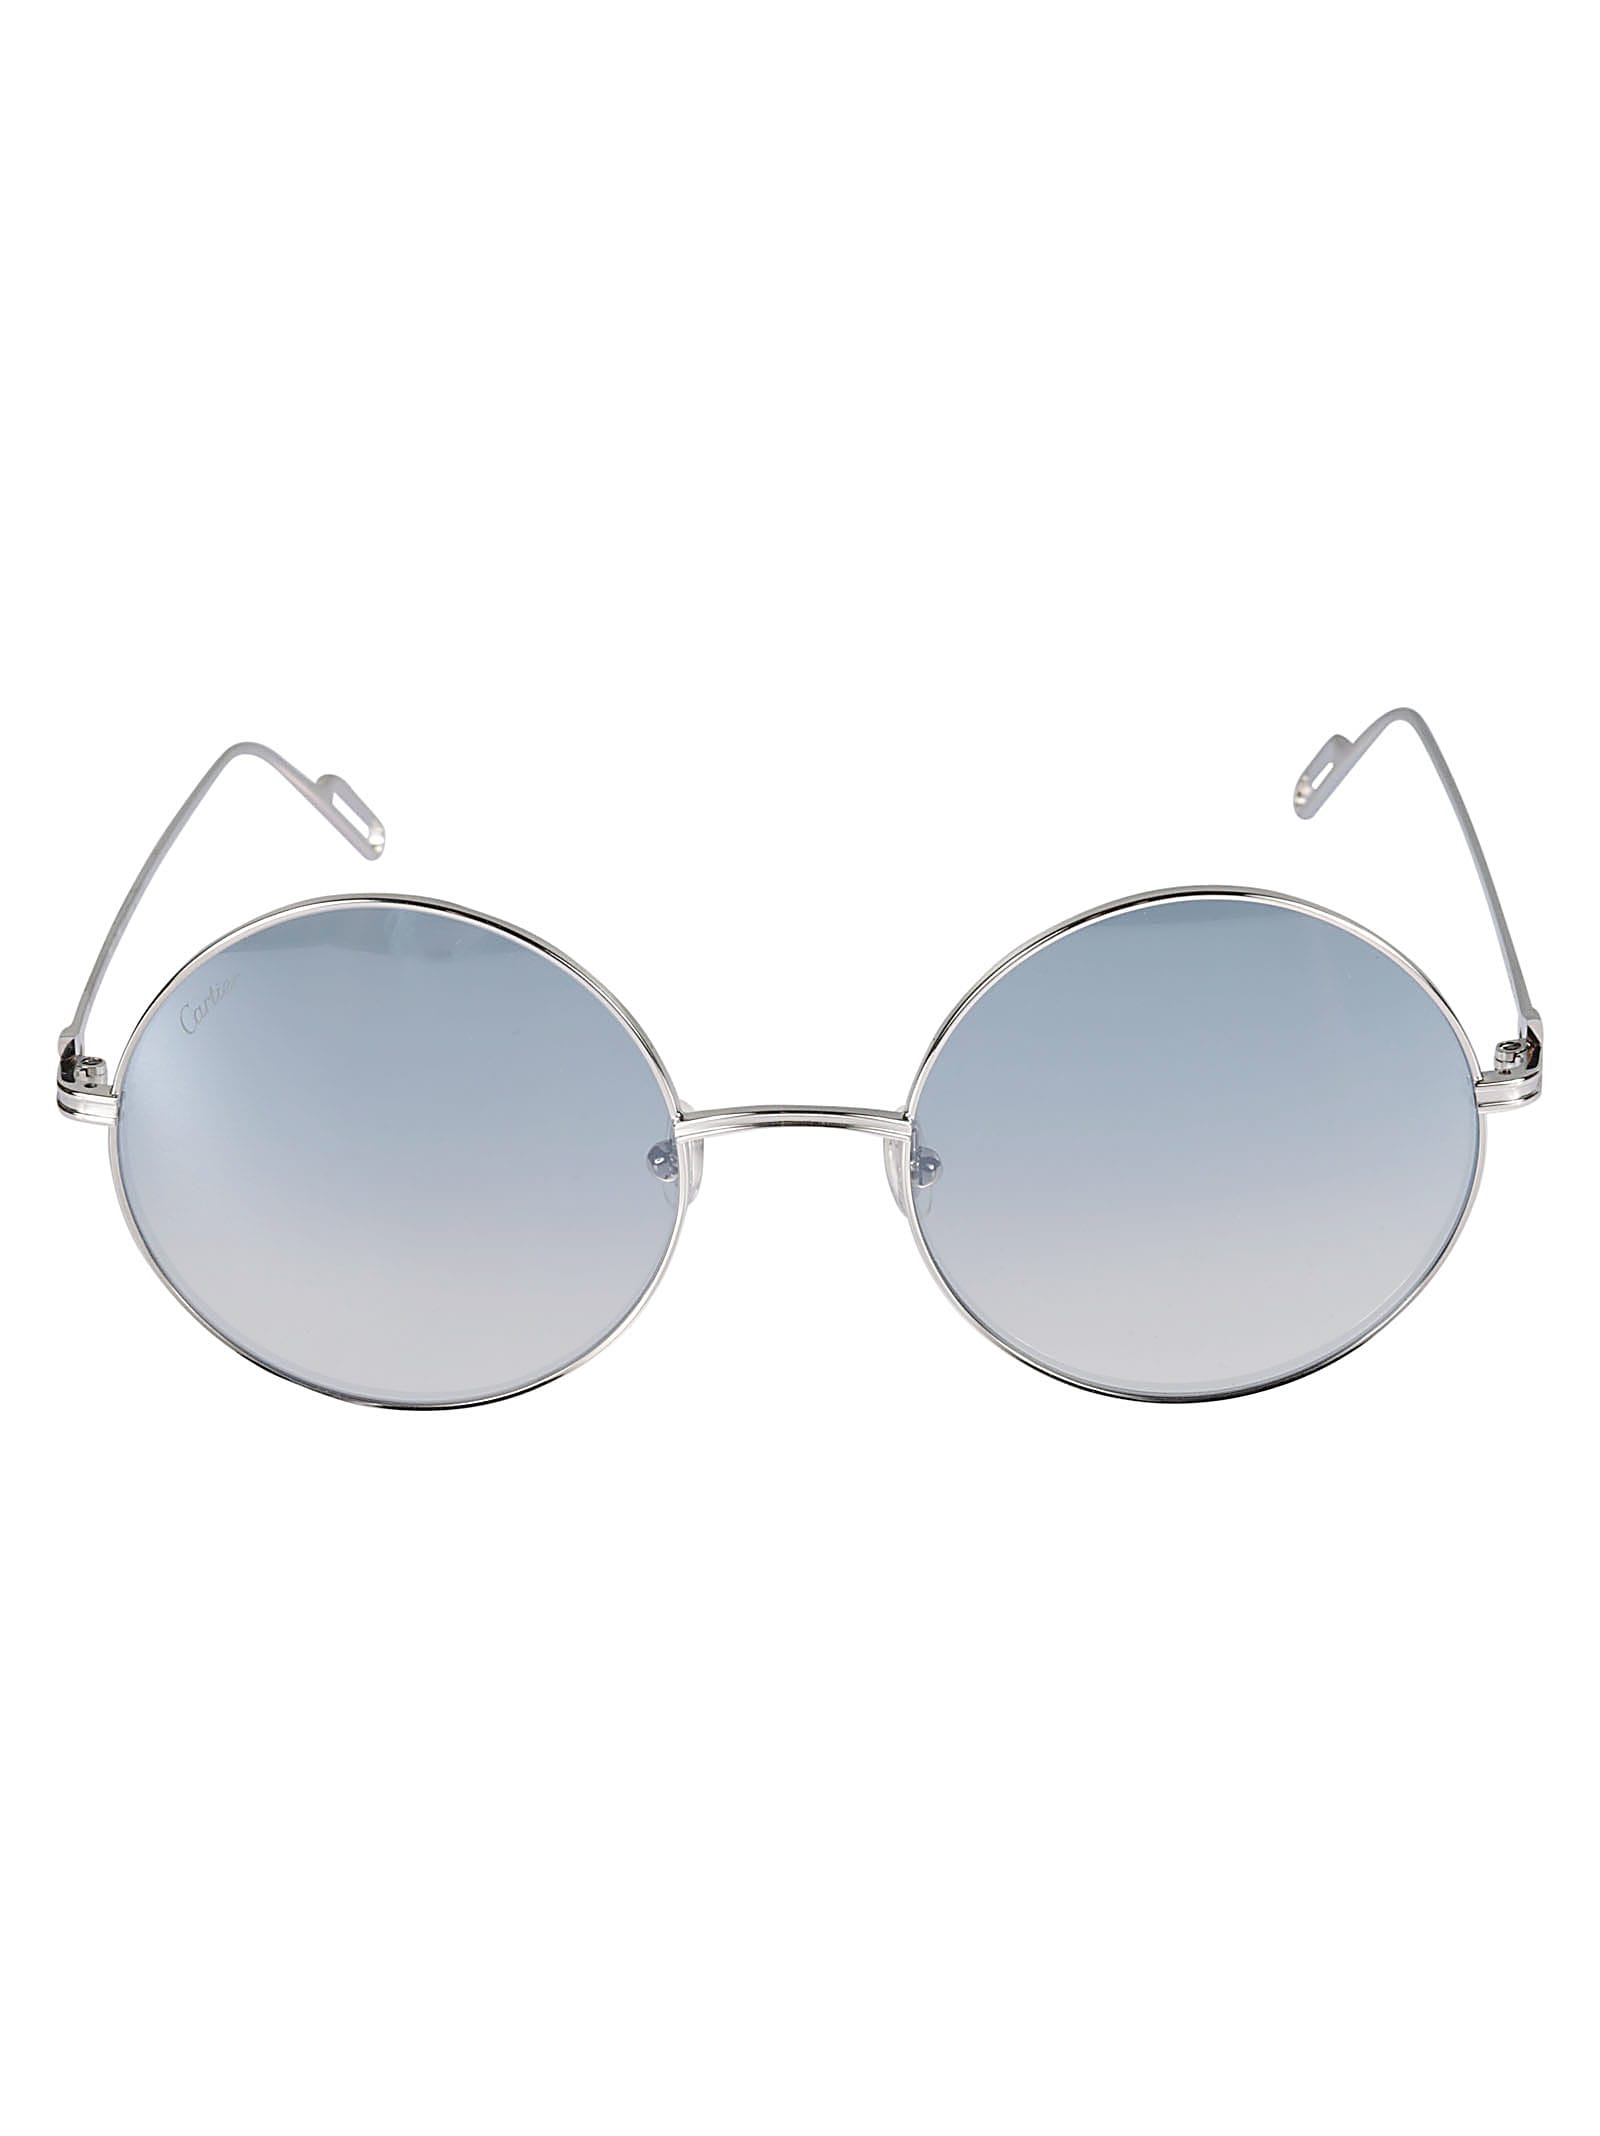 Premiere De Cartier Sunglasses